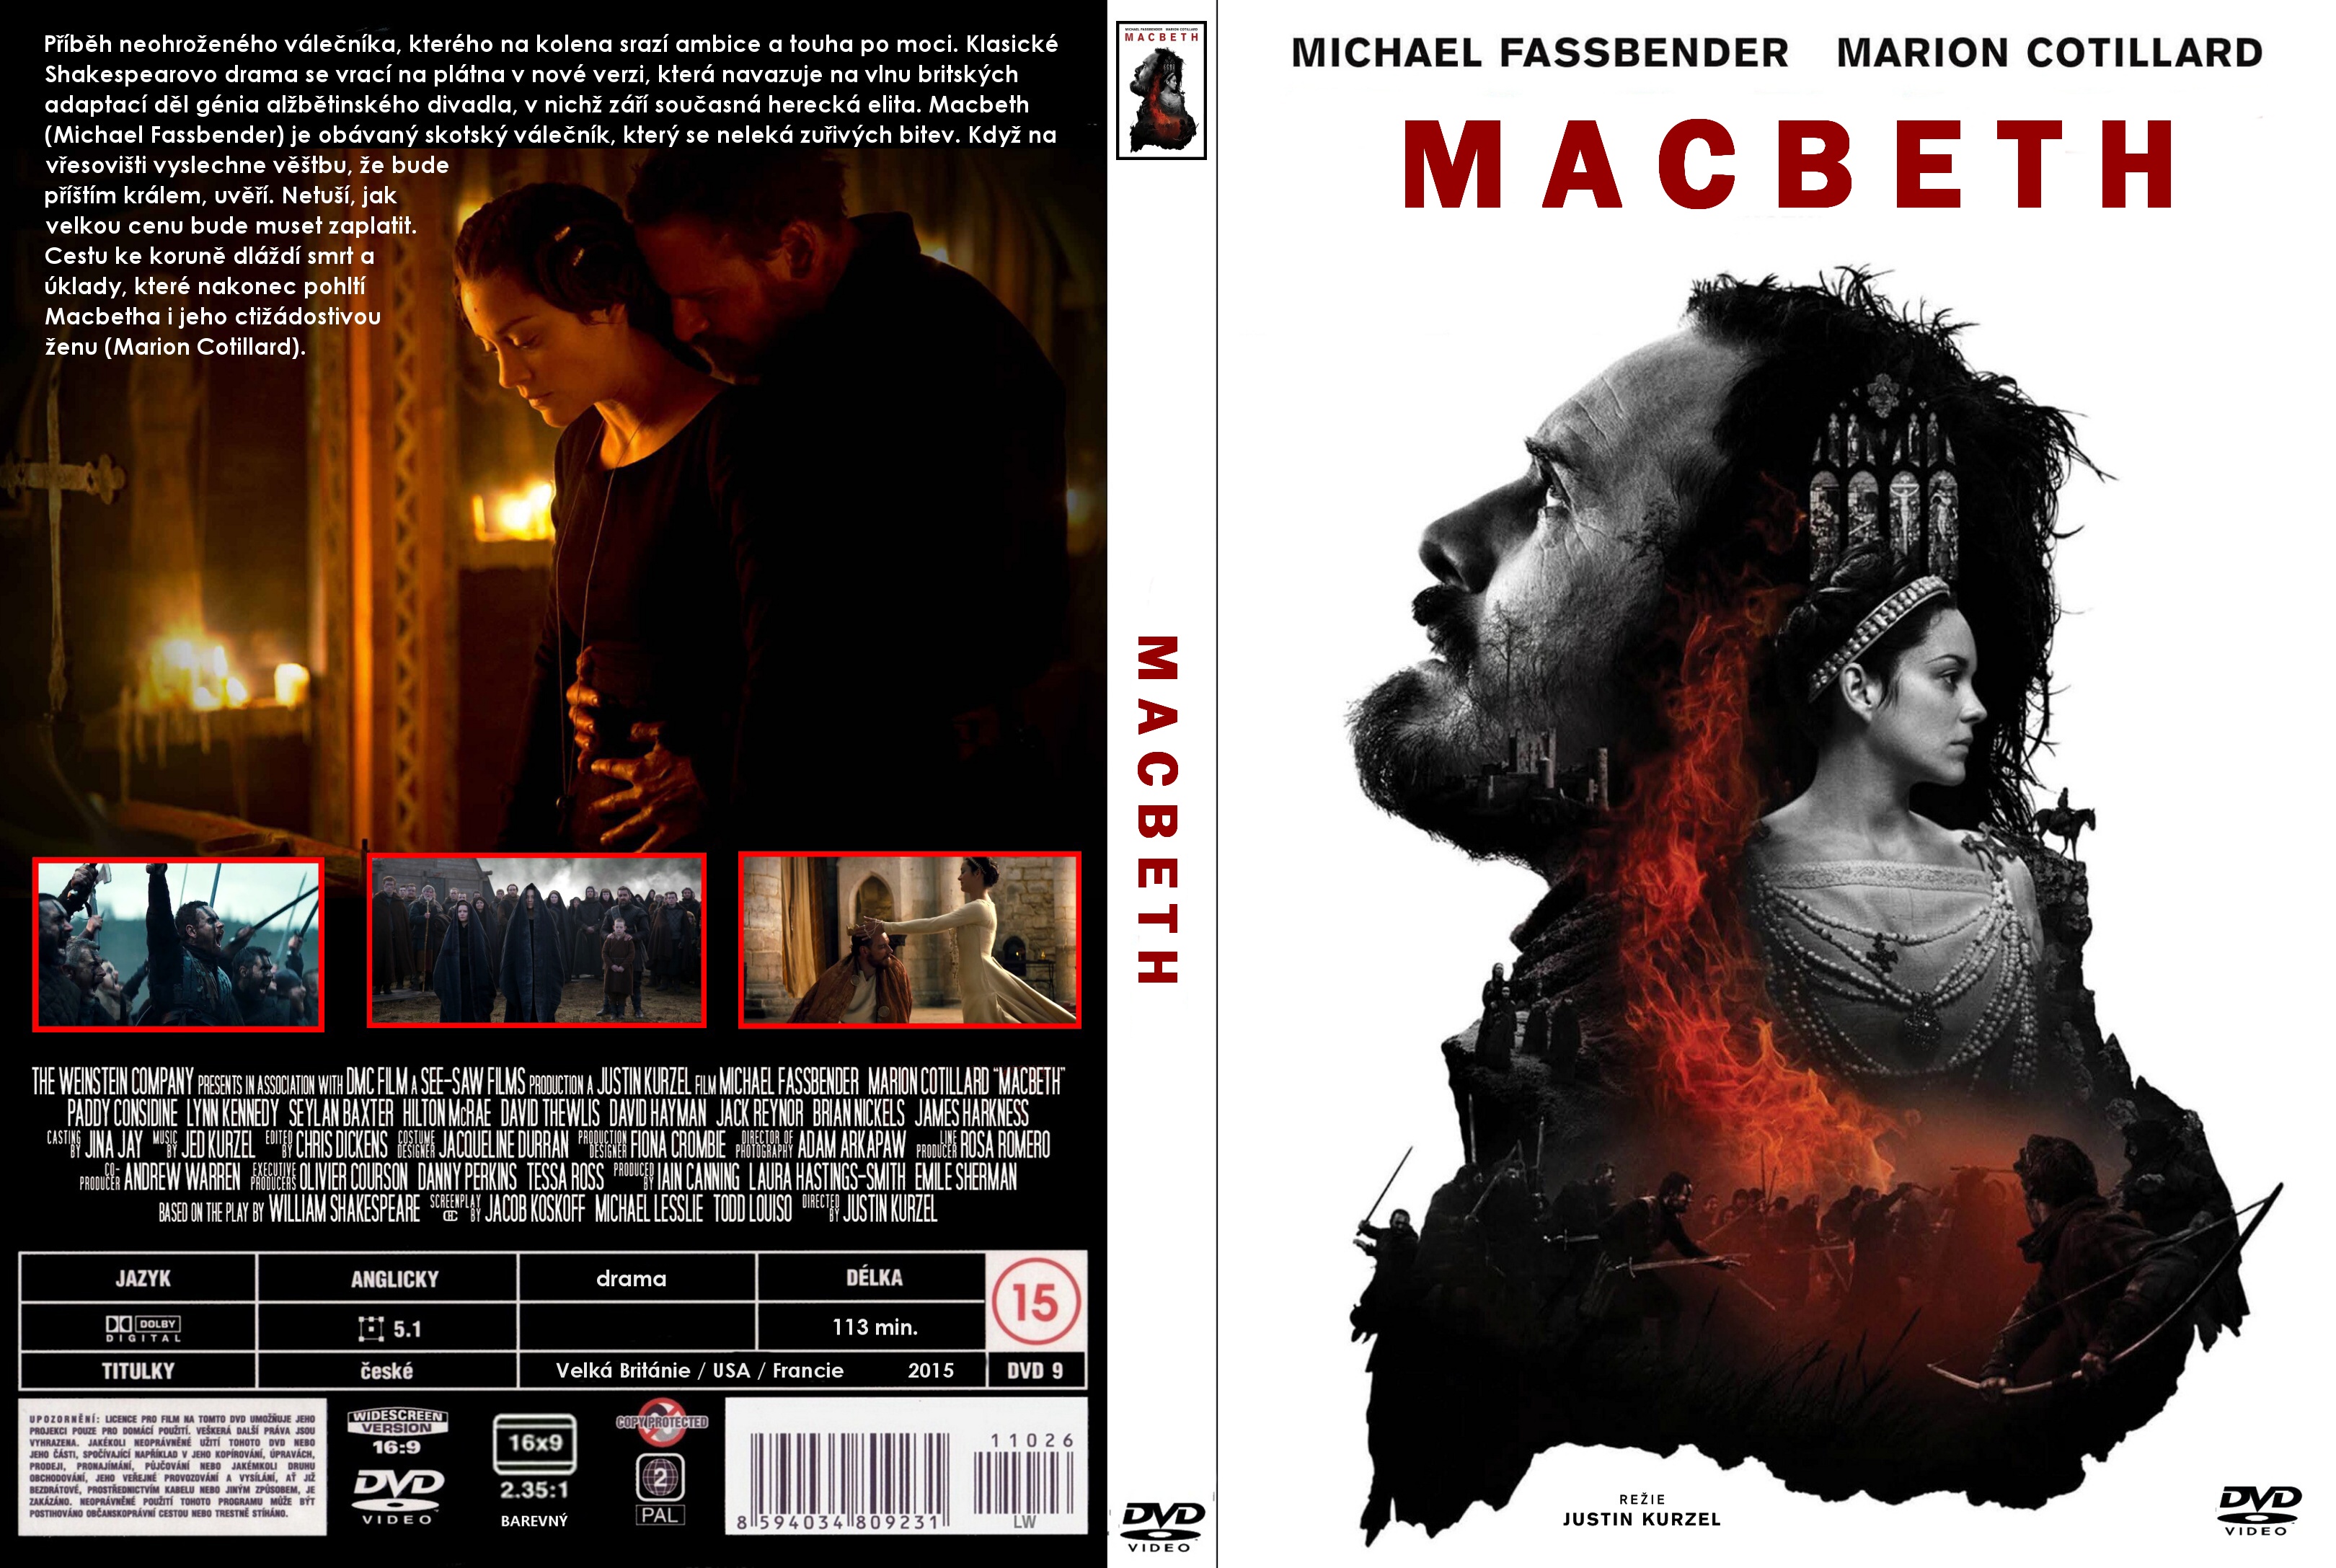 Macbeth 2015 Movie Poster A0-A1-A2-A3-A4-A5-A6-MAXI 443